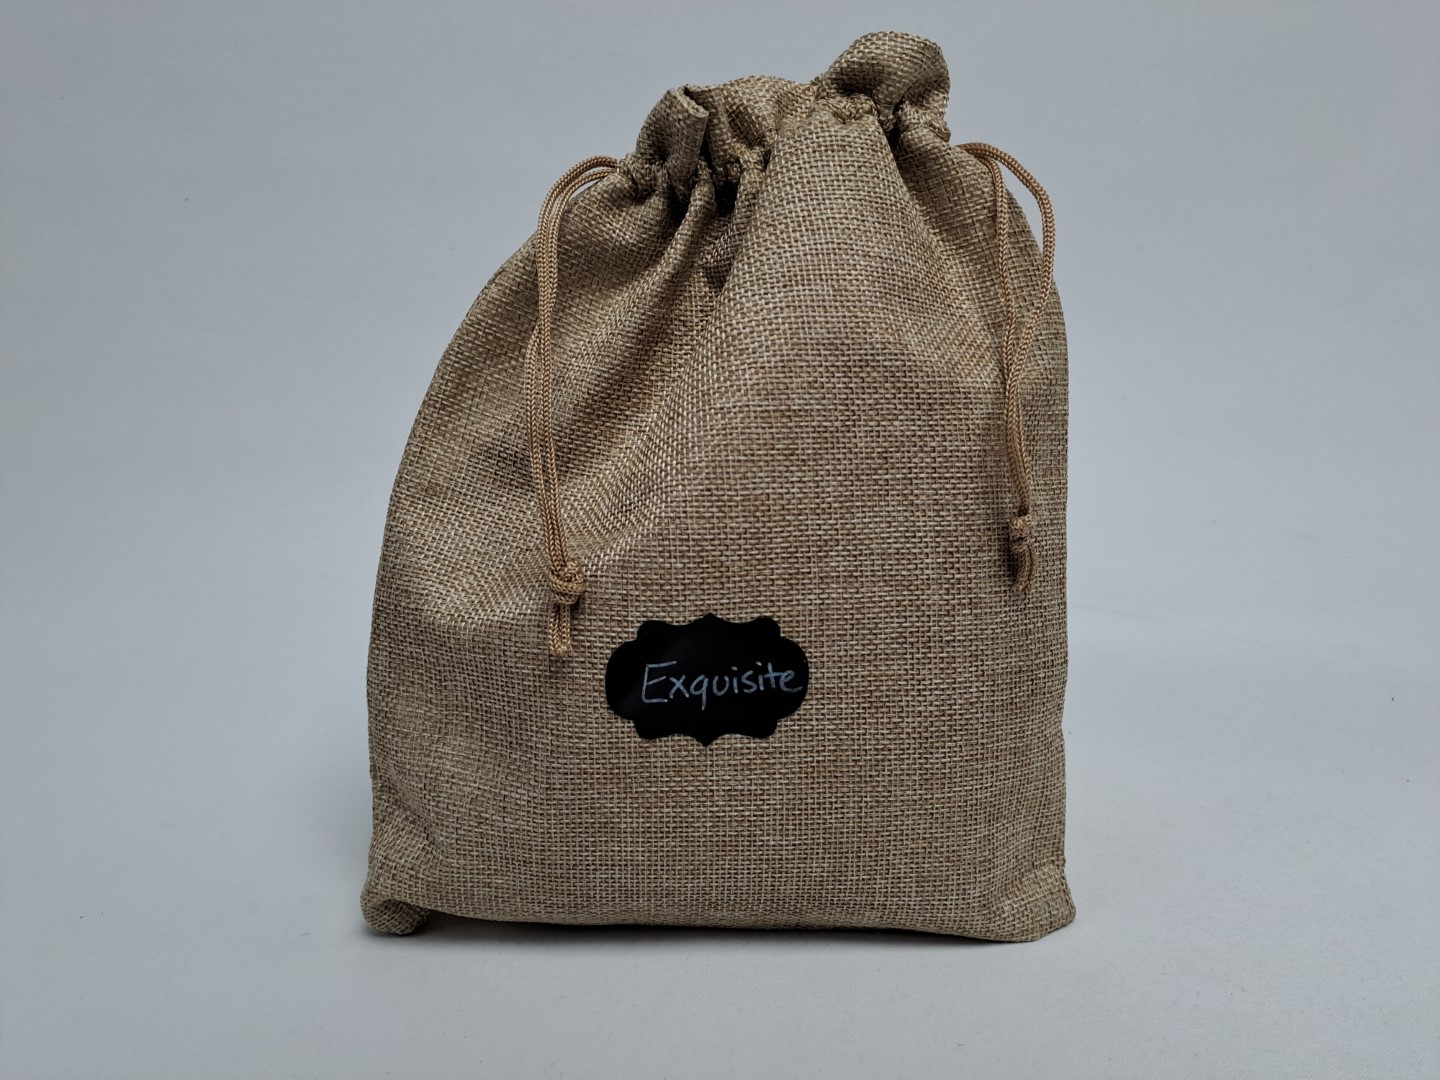 Party Bag Clutch type embellishment envelope shape BOHO Floral Sequin Sling  Bag | eBay